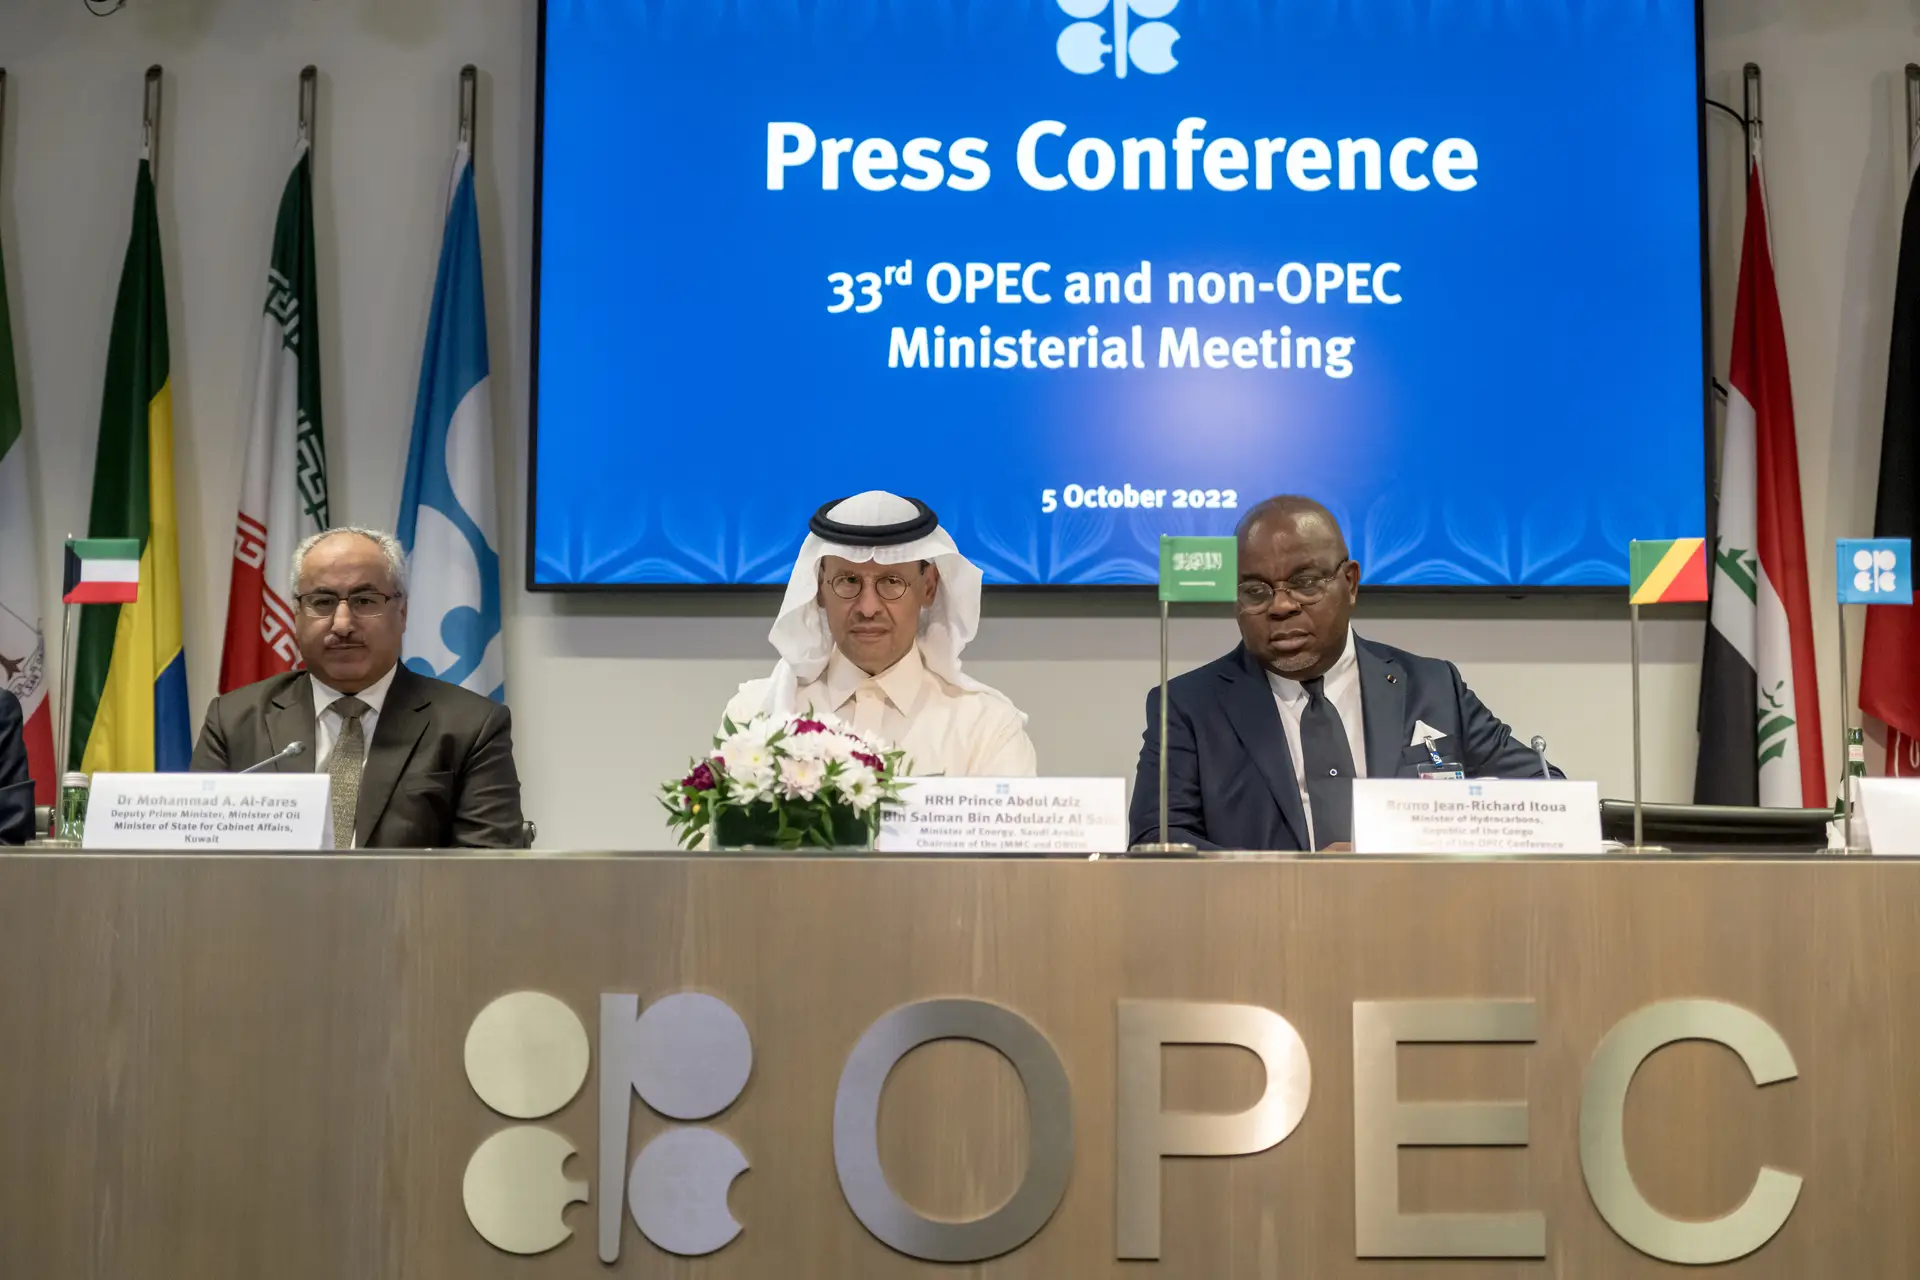 Conferência de imprensa da OPEC em Viena, dia 5 de Outubro